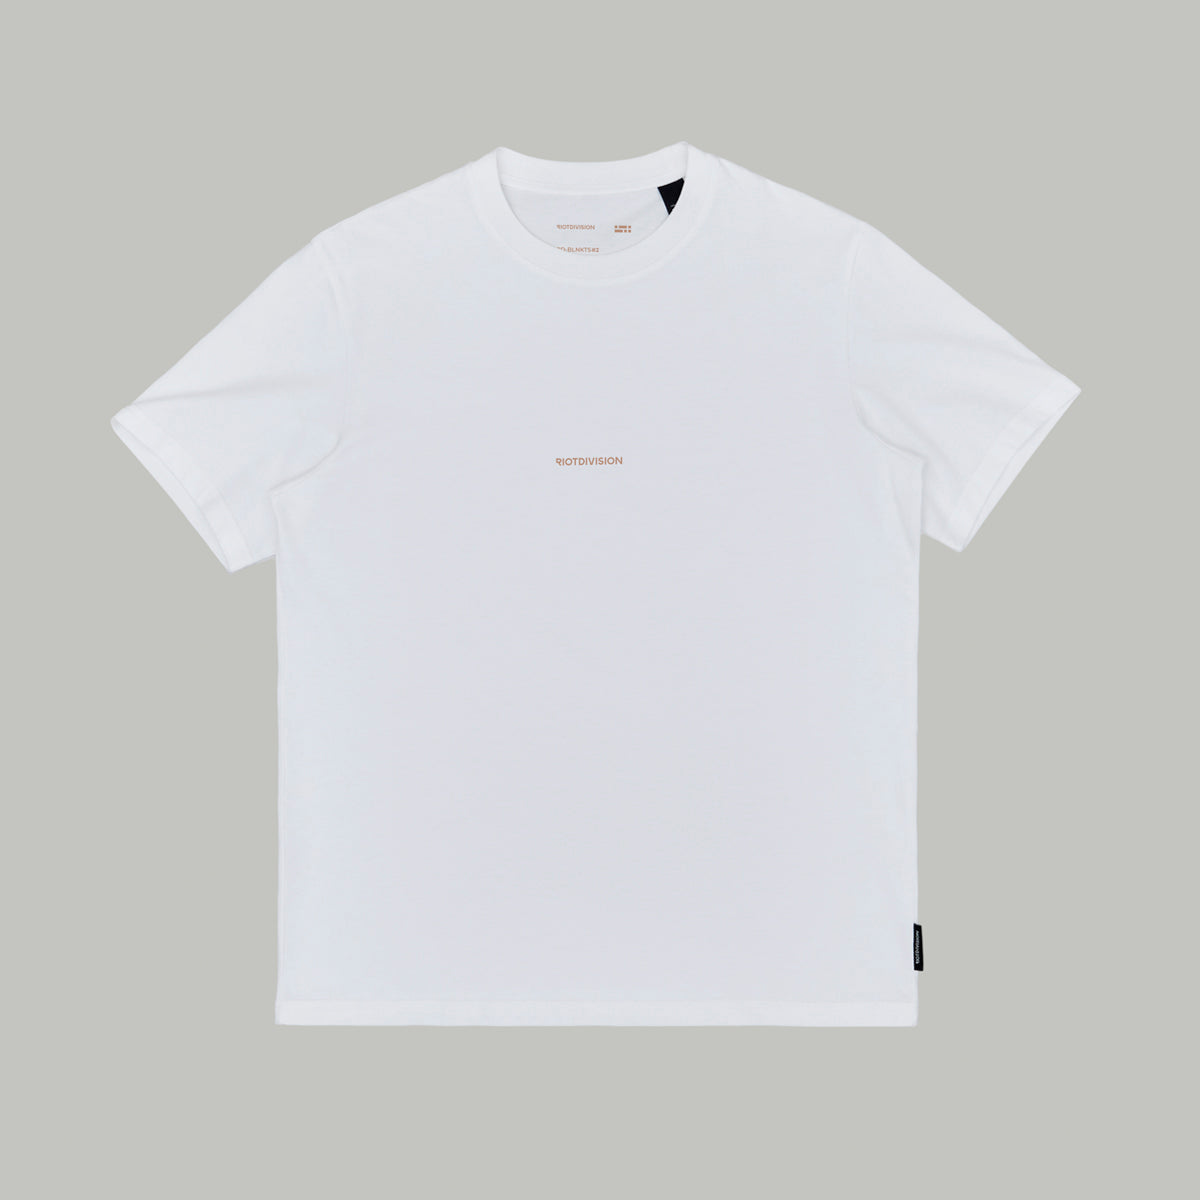 Blank T-Shirt #2 RD-BLNKTS#2 WHITE